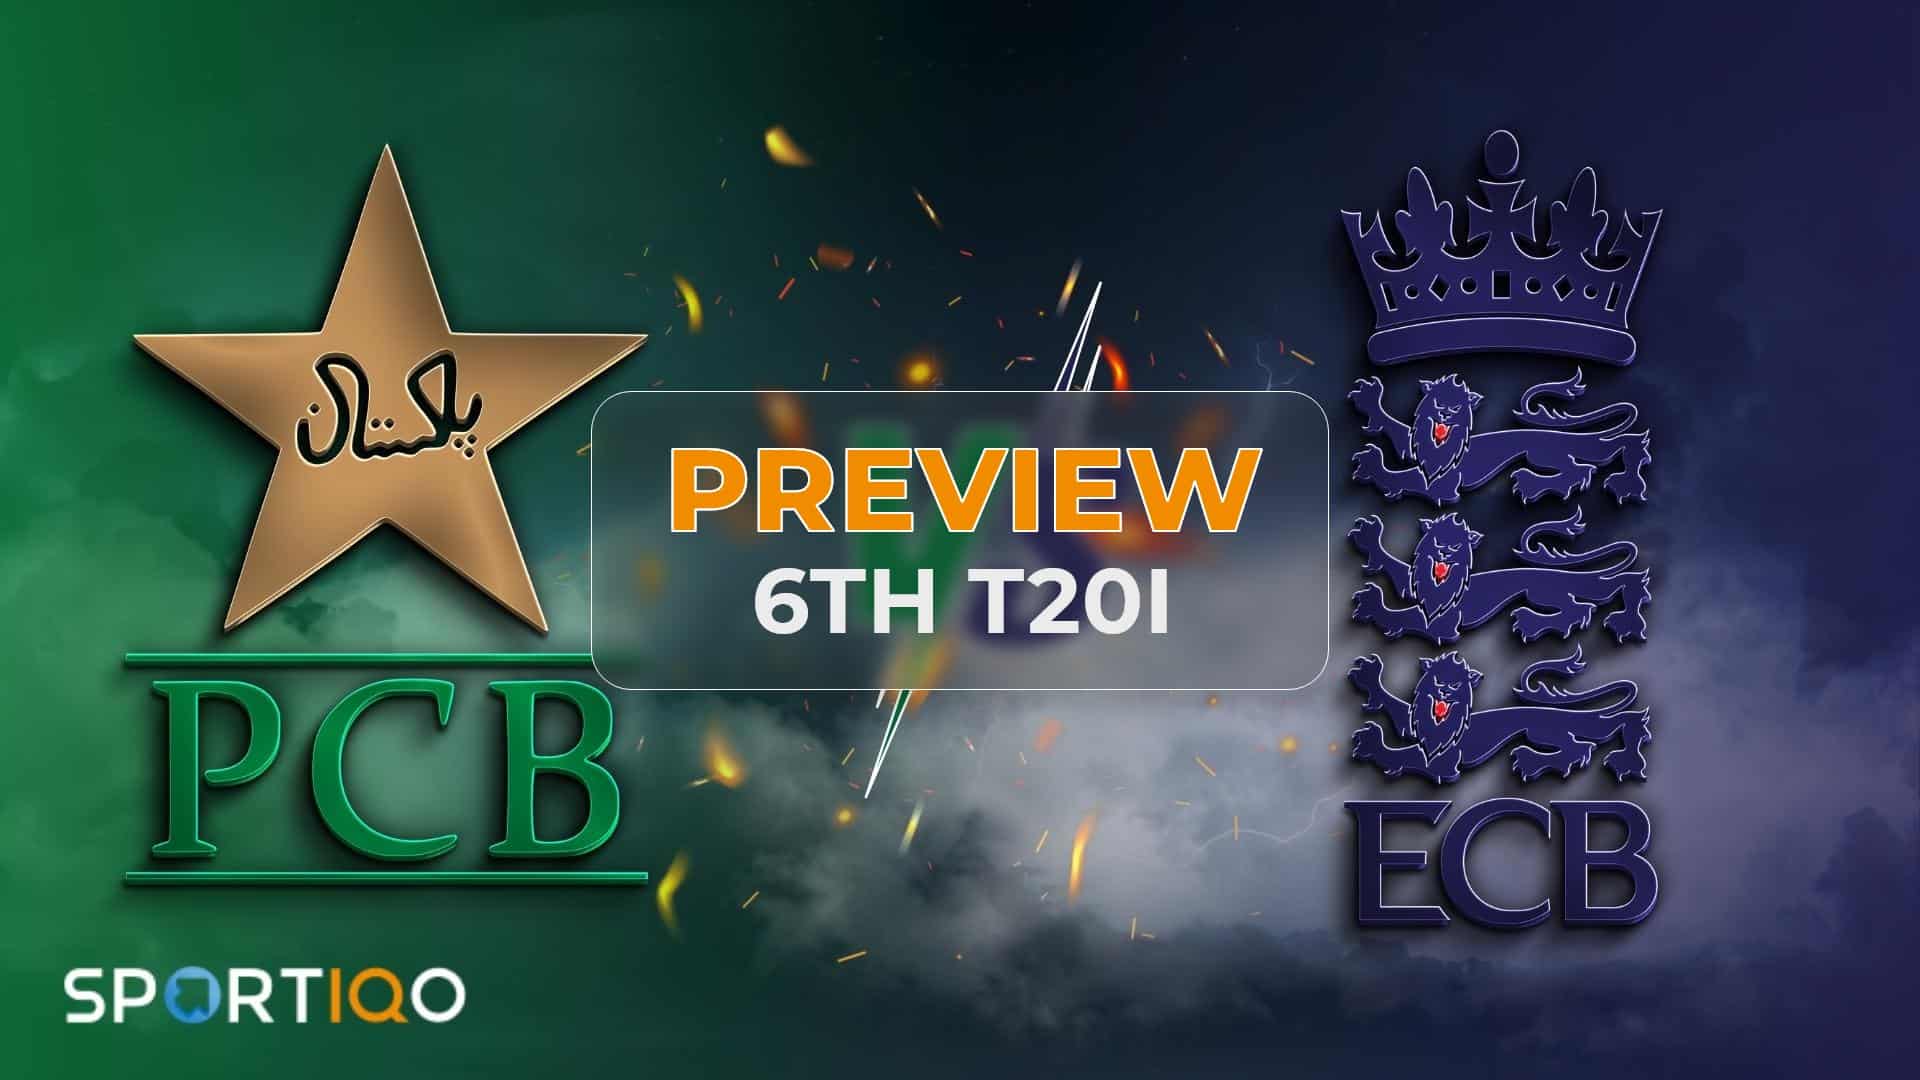 Pak v Eng 6th T20I - Preview